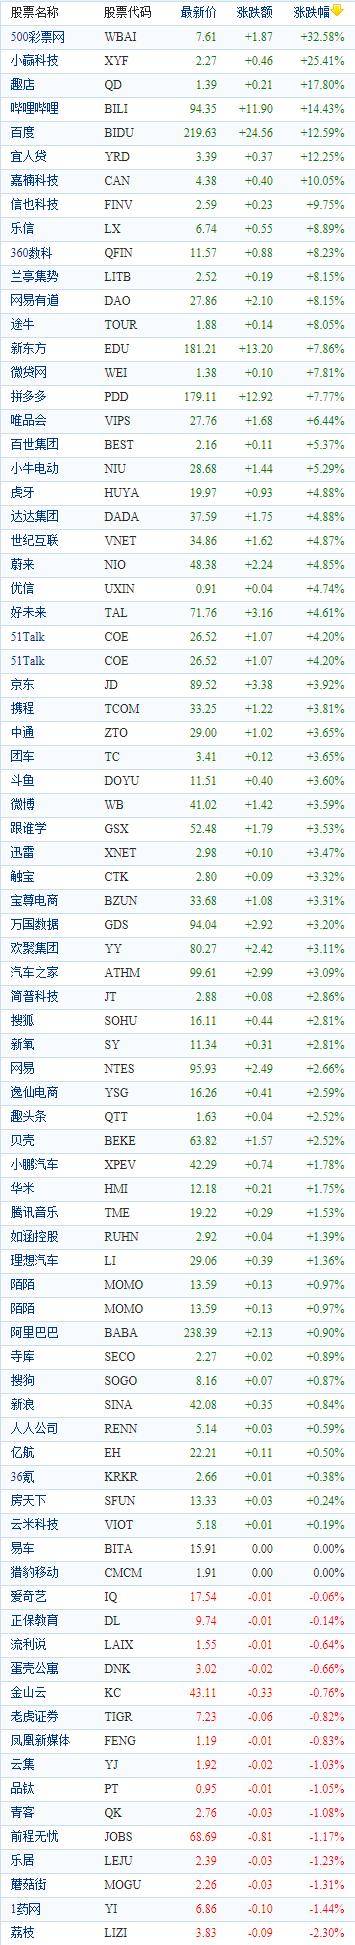 中国概念股周三收盘时涨幅接近15%